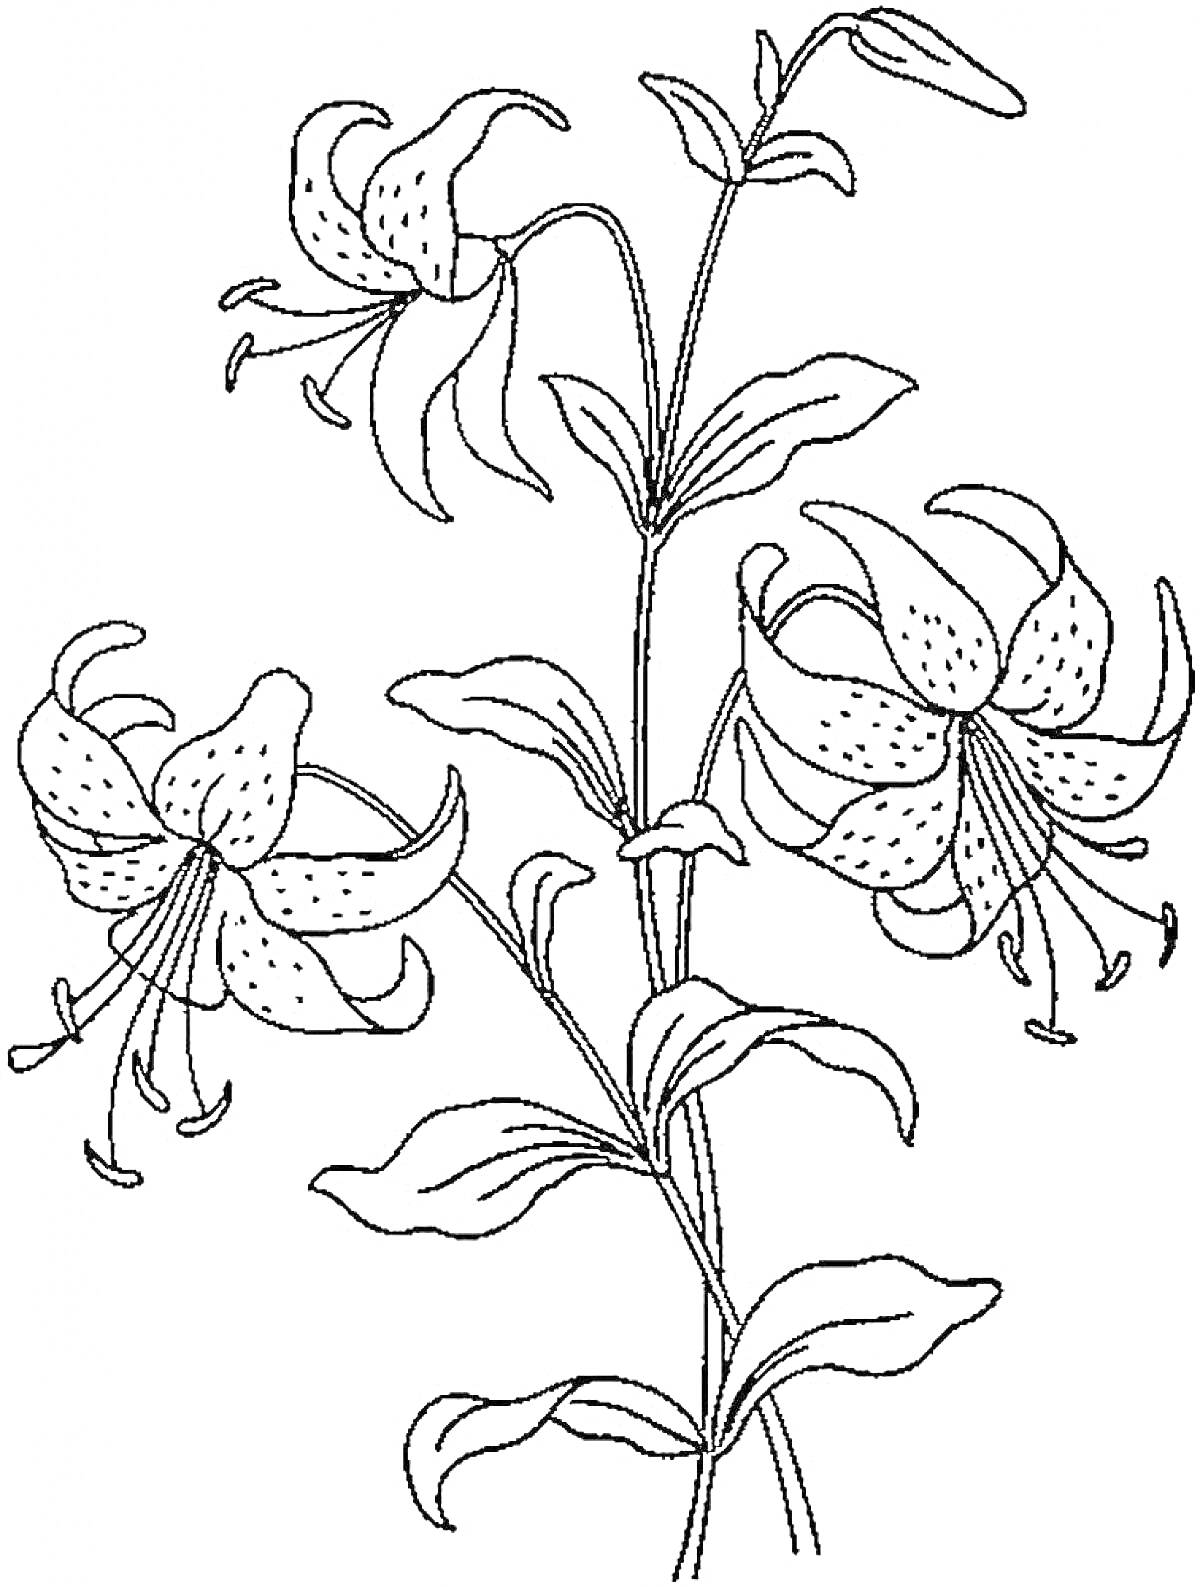 Раскраска Лилия с тремя цветками и листьями